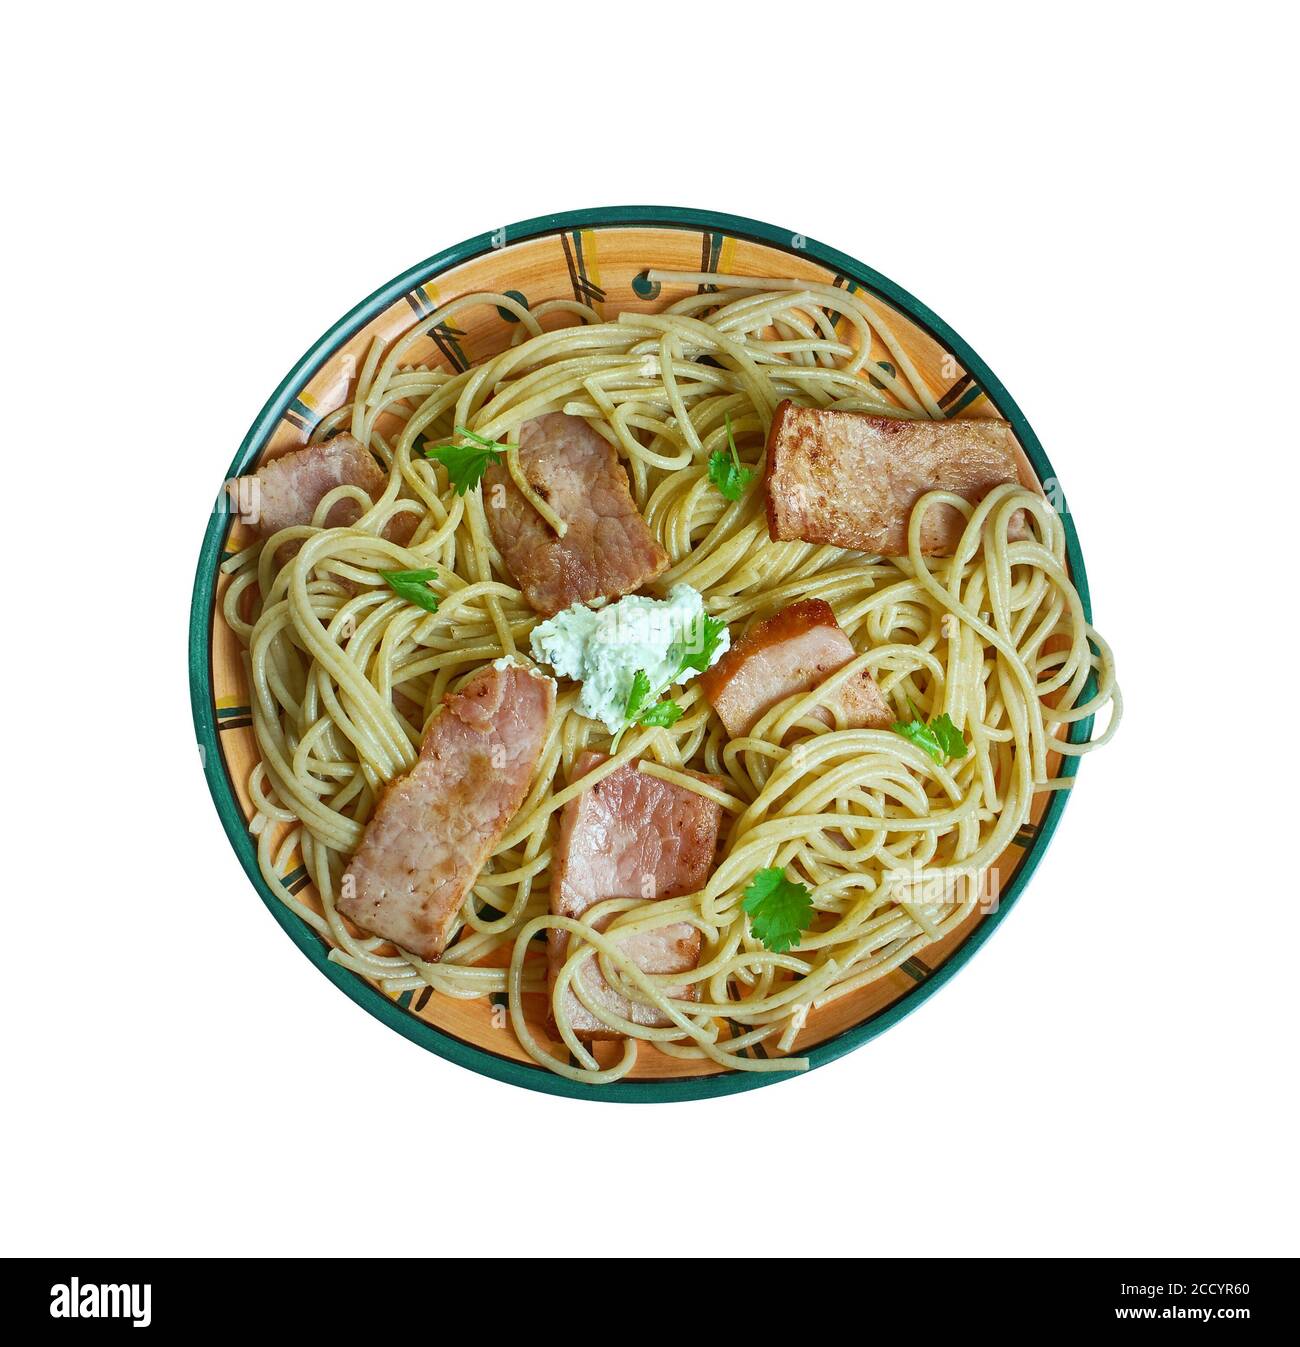 Spaghetti al guanciale - Italian dish hailing from Abruzzo. Stock Photo